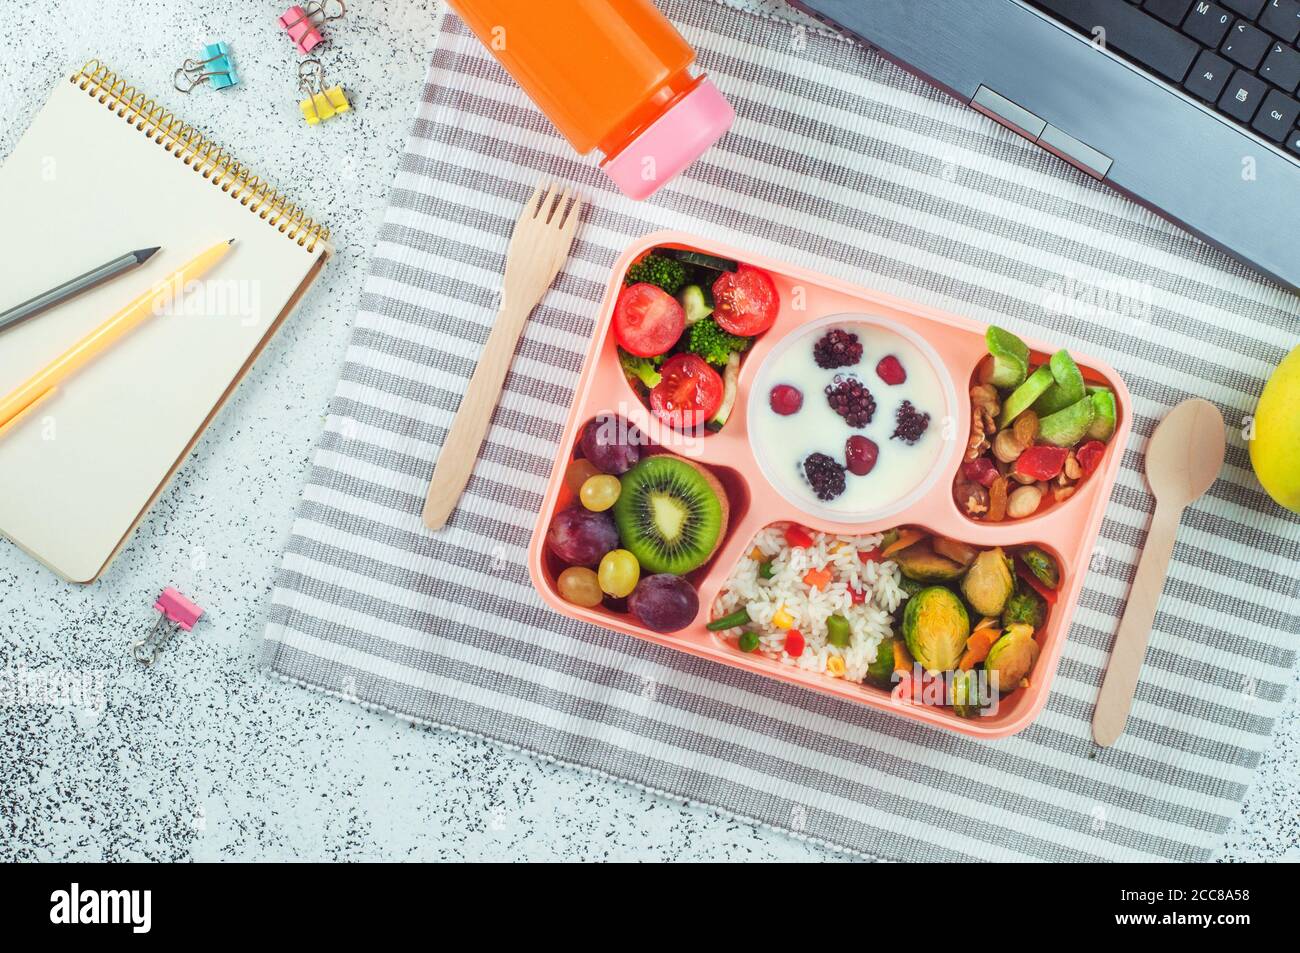 Panier repas avec salade de légumes, baies au yougurt, fruits et riz sur table de bureau Banque D'Images